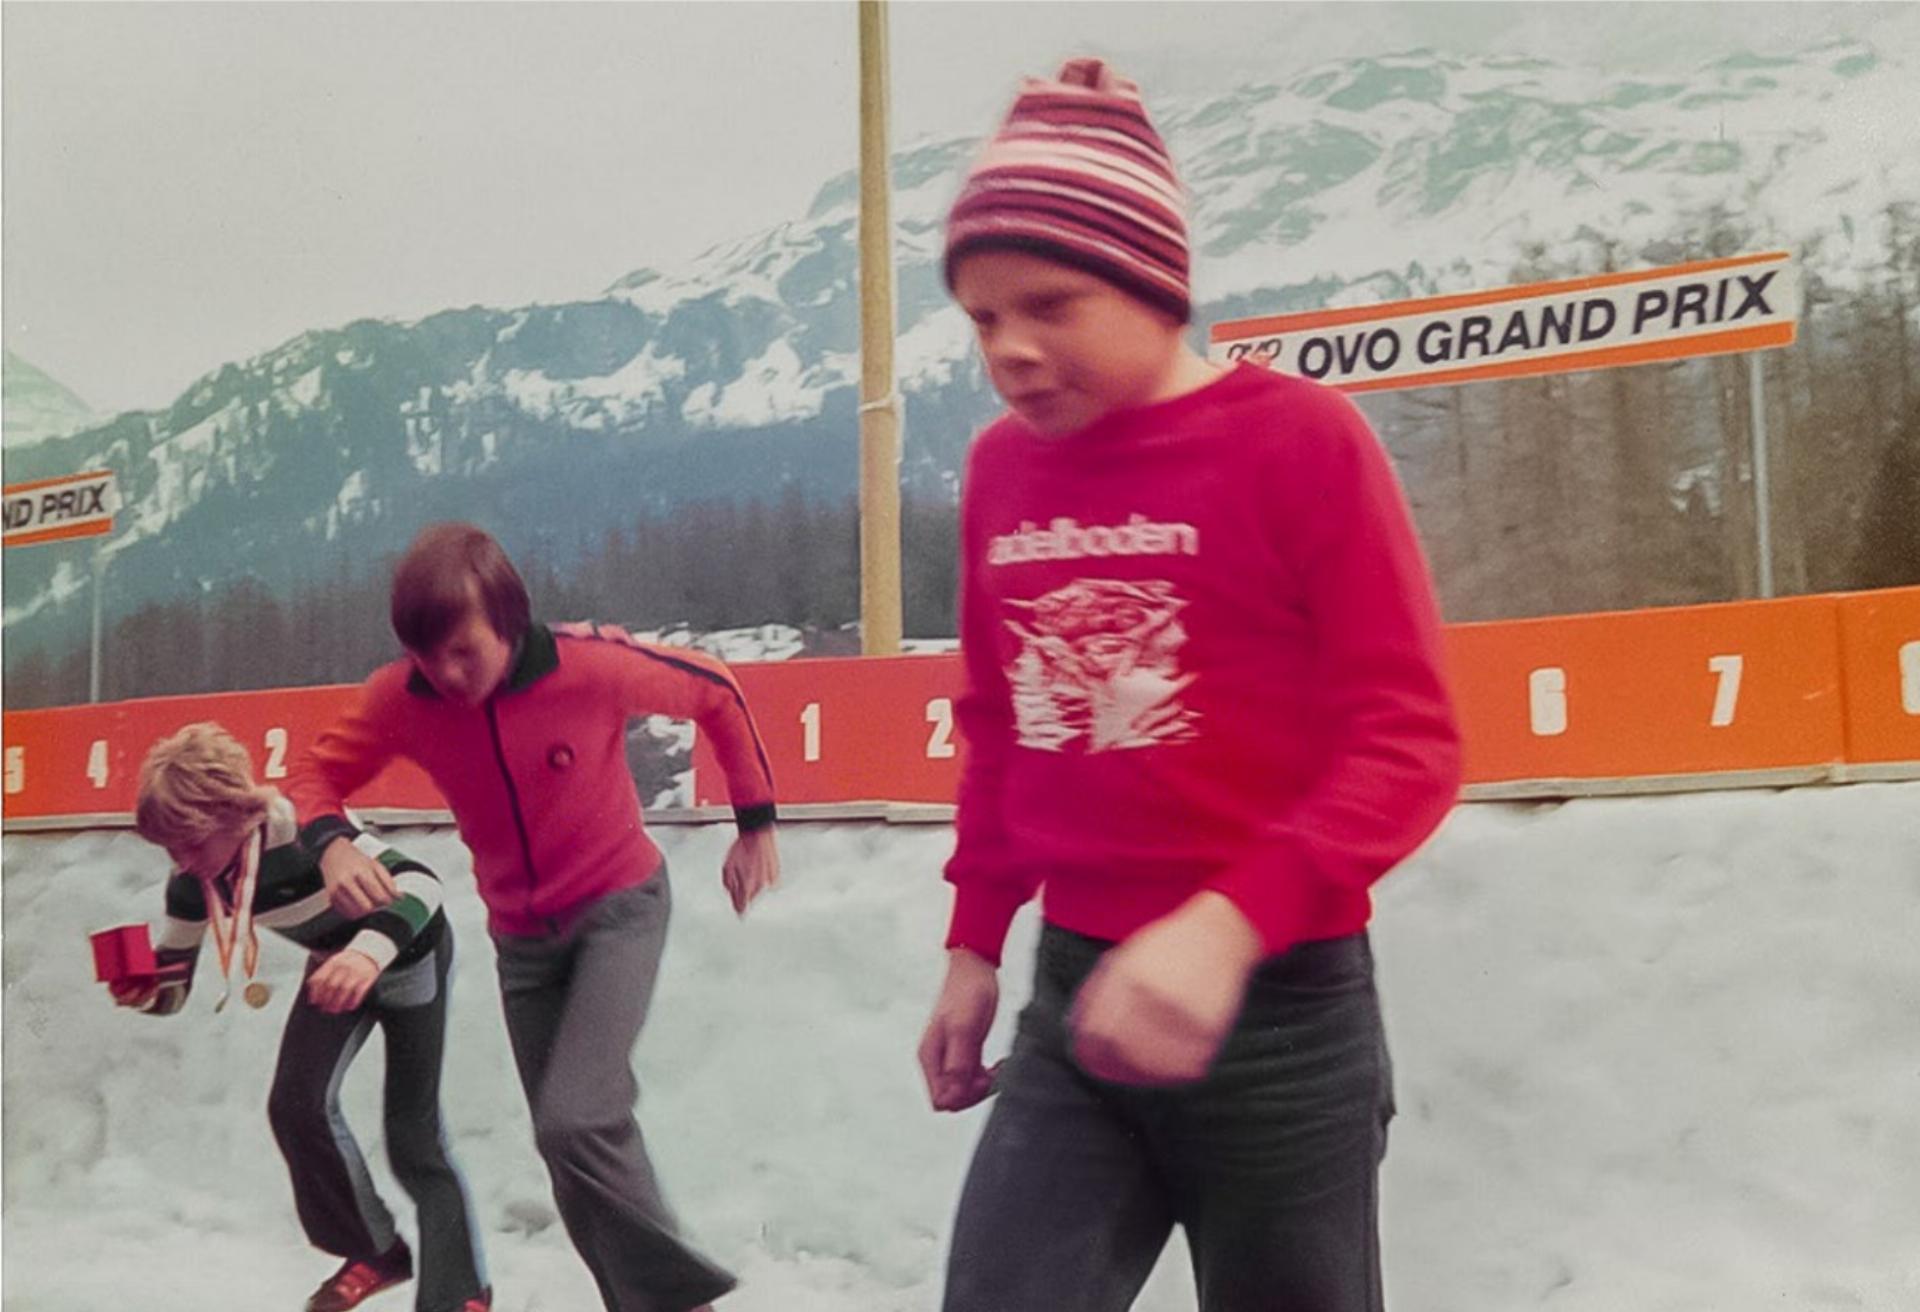 Die Vorläuferveranstaltung: Der damals 14-jährige Hans Pieren (vorne) und seine beiden Mitbewerber Marc Girardelli (Mitte) und Franz Heinzer 1976 am Ovo-Grand-Prix in Sils Maria. BILD: ZVG